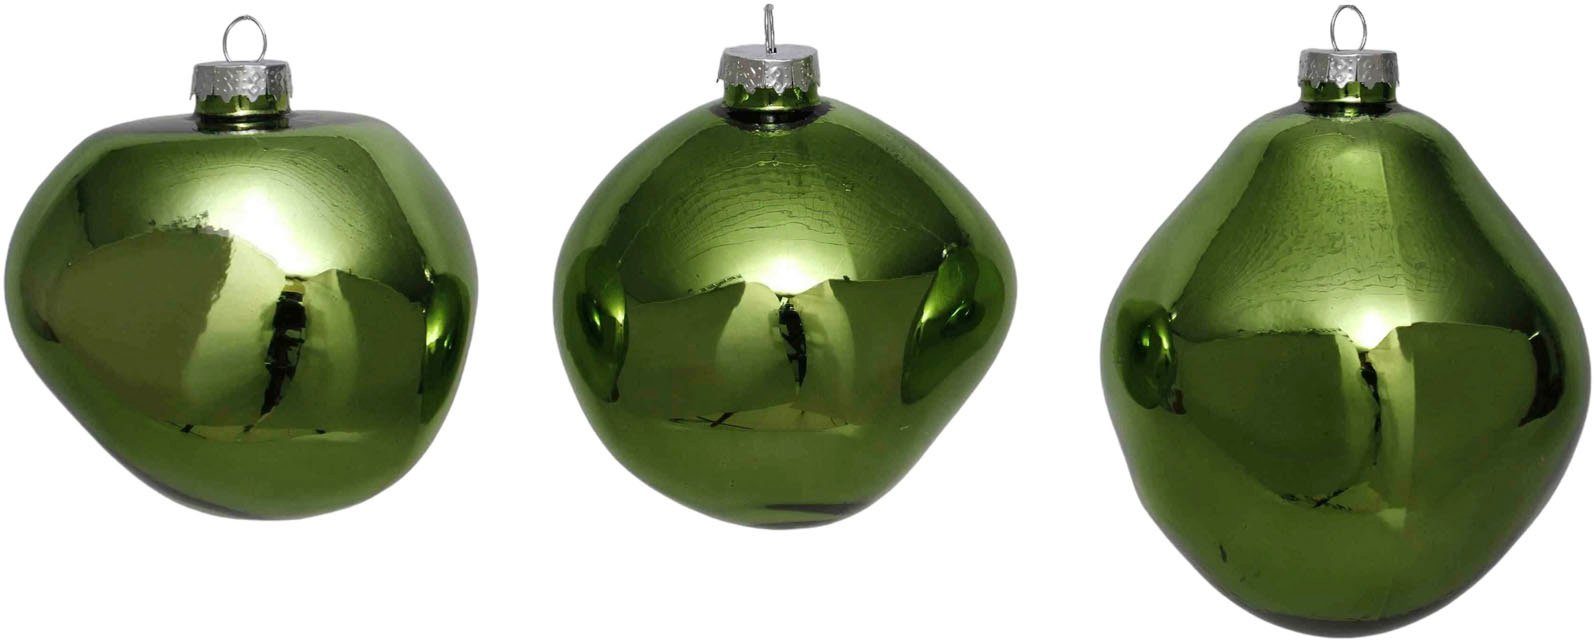 Leonique Weihnachtsbaumkugel Birdelle glänzend, Weihnachtsdeko,  Christbaumschmuck, Christbaumkugeln (3 St), Baumkugeln in organischer Form,  Ø 10 cm, organische Kugeln aus Glas